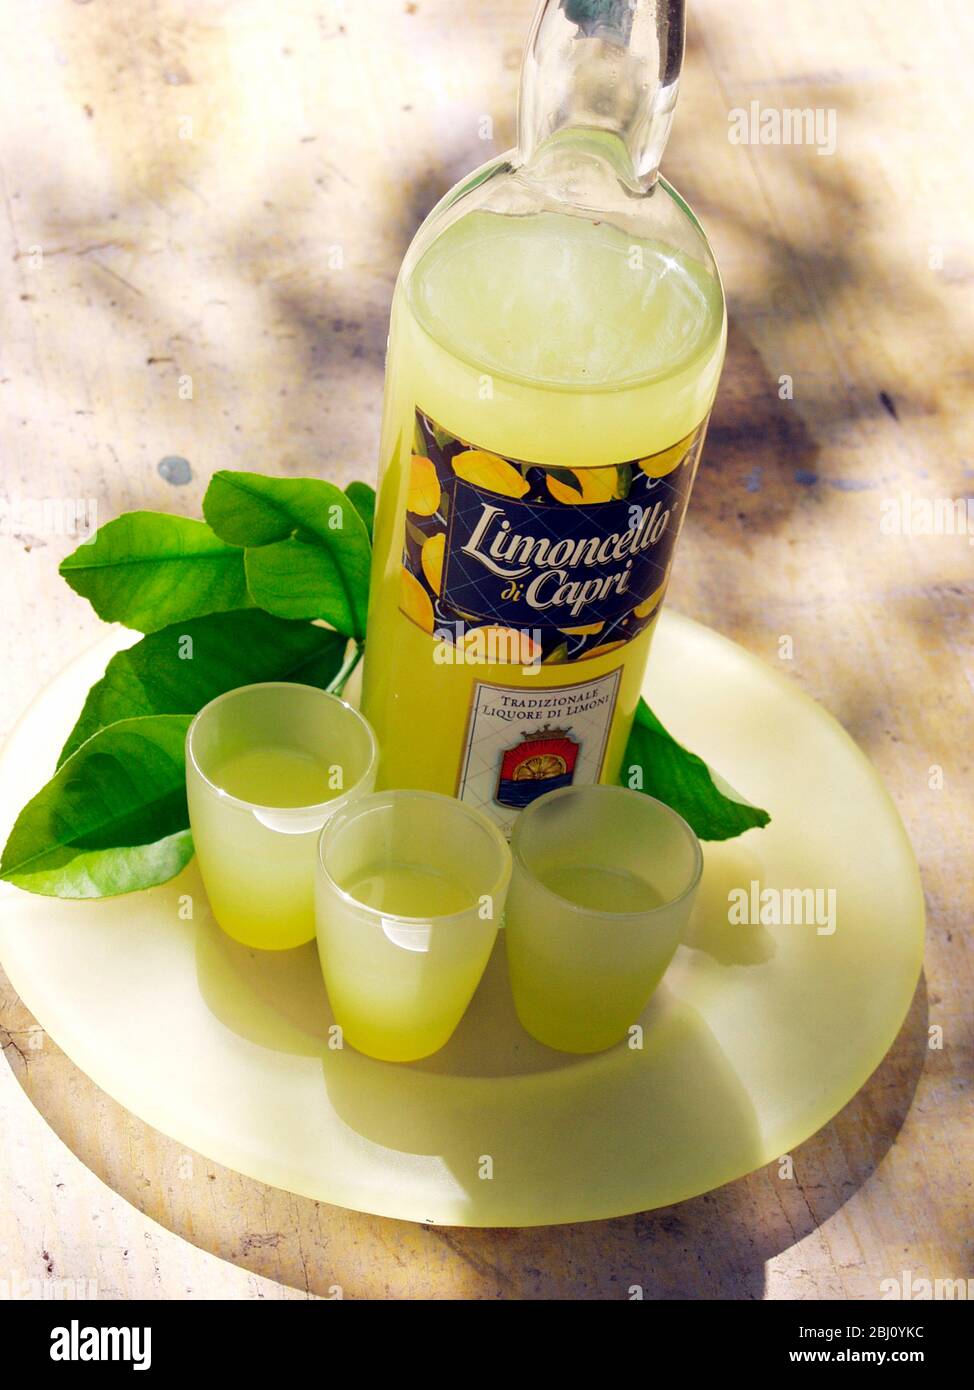 Bouteille de liqueur de limoncello avec trois verres et feuilles de citronniers - Banque D'Images